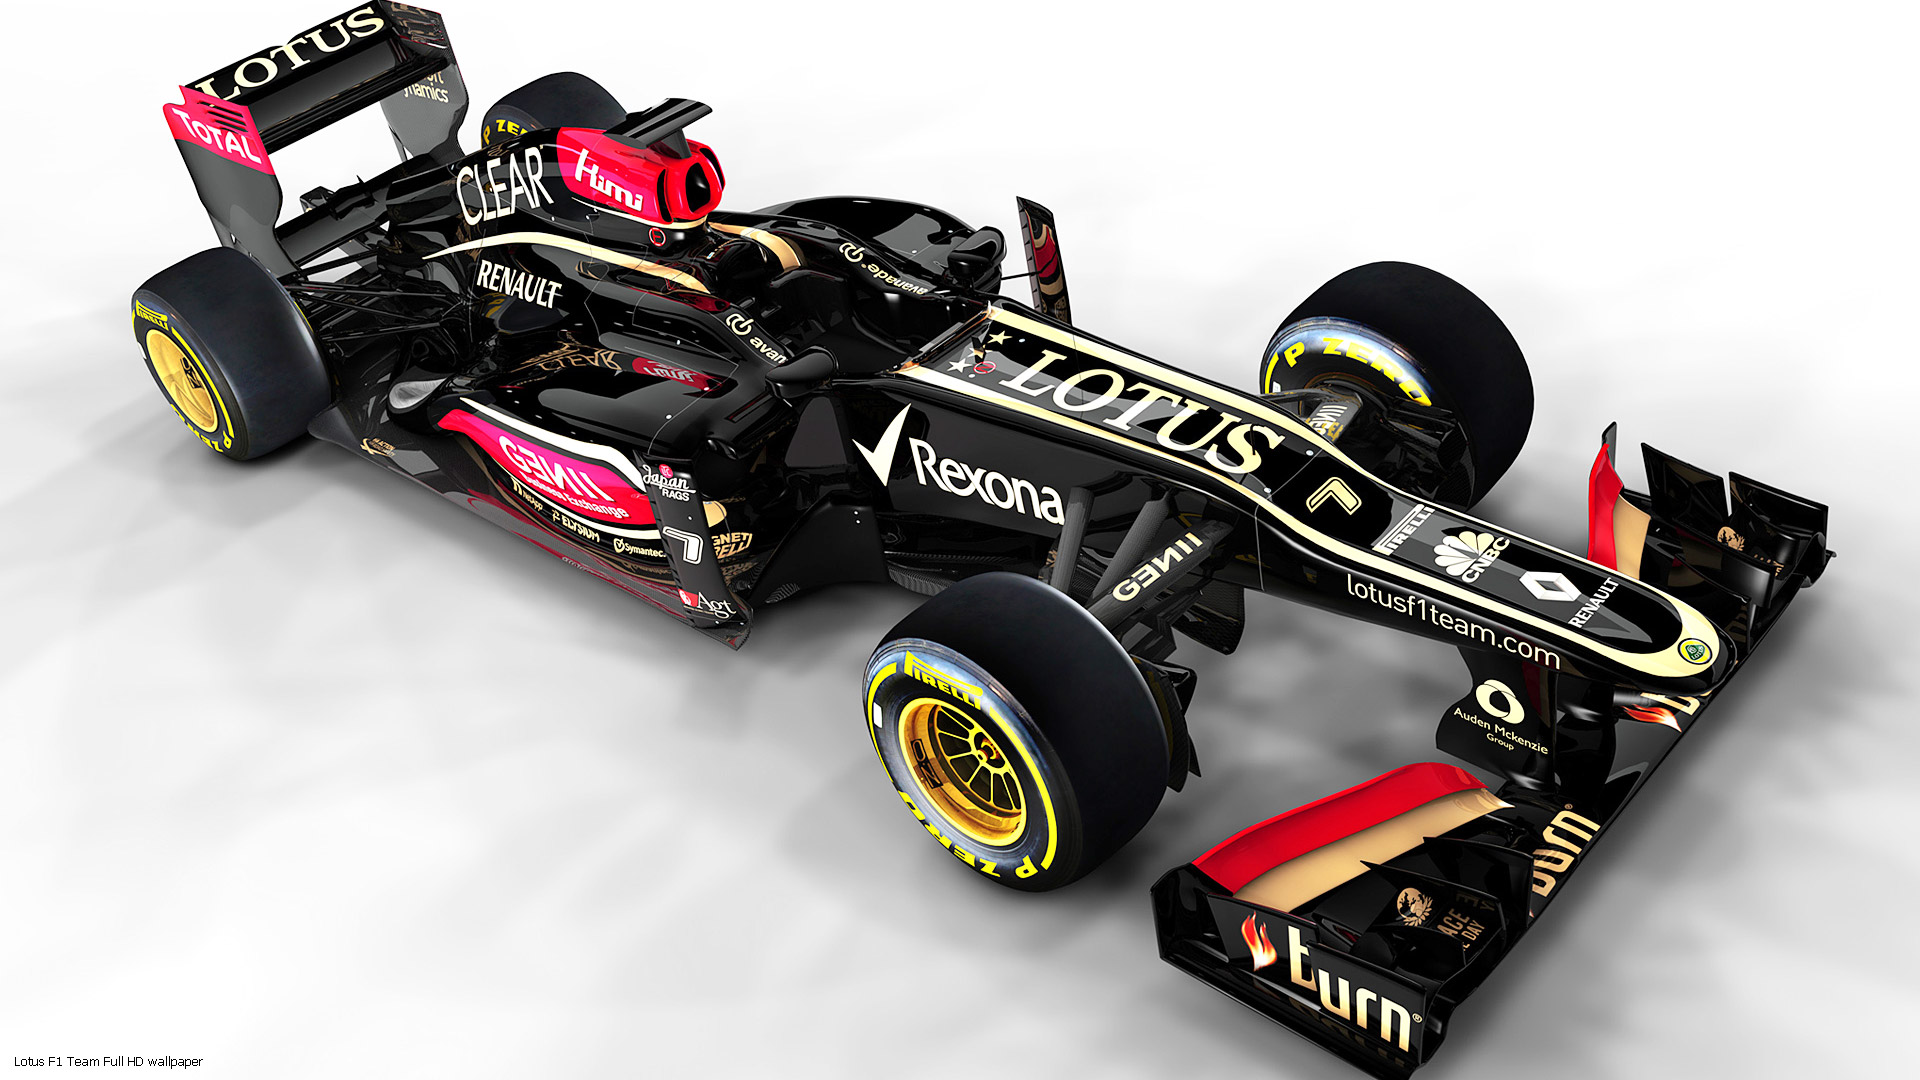 Lotus Full HD Wallpaper Formula Car